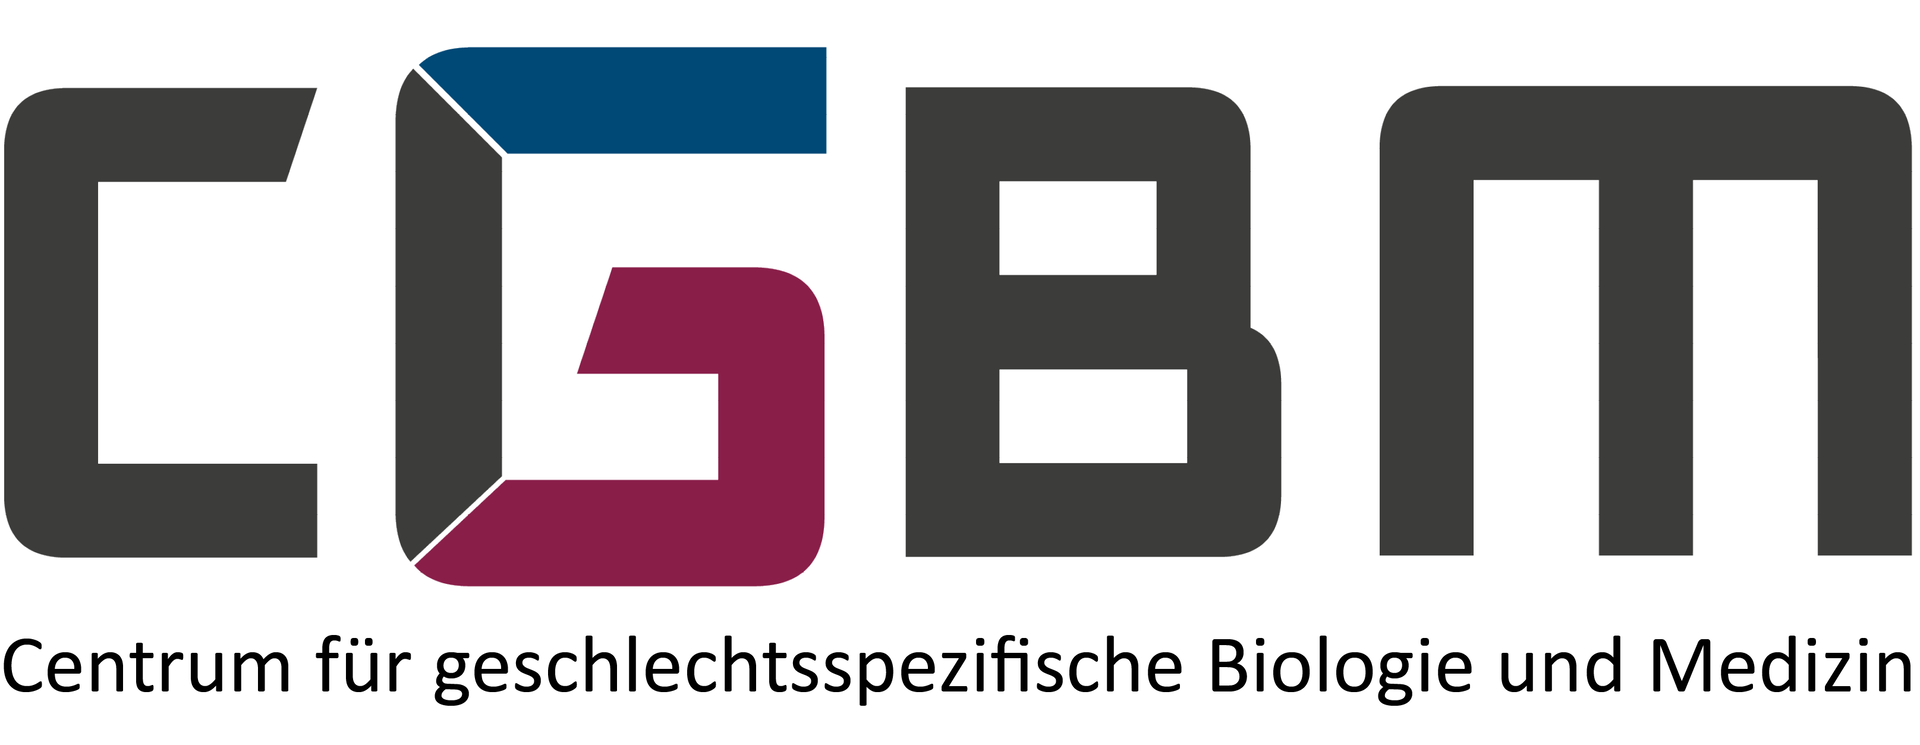 Logo des Centrums für geschlechtsspezifische Biologie und Medizin (CGBM)